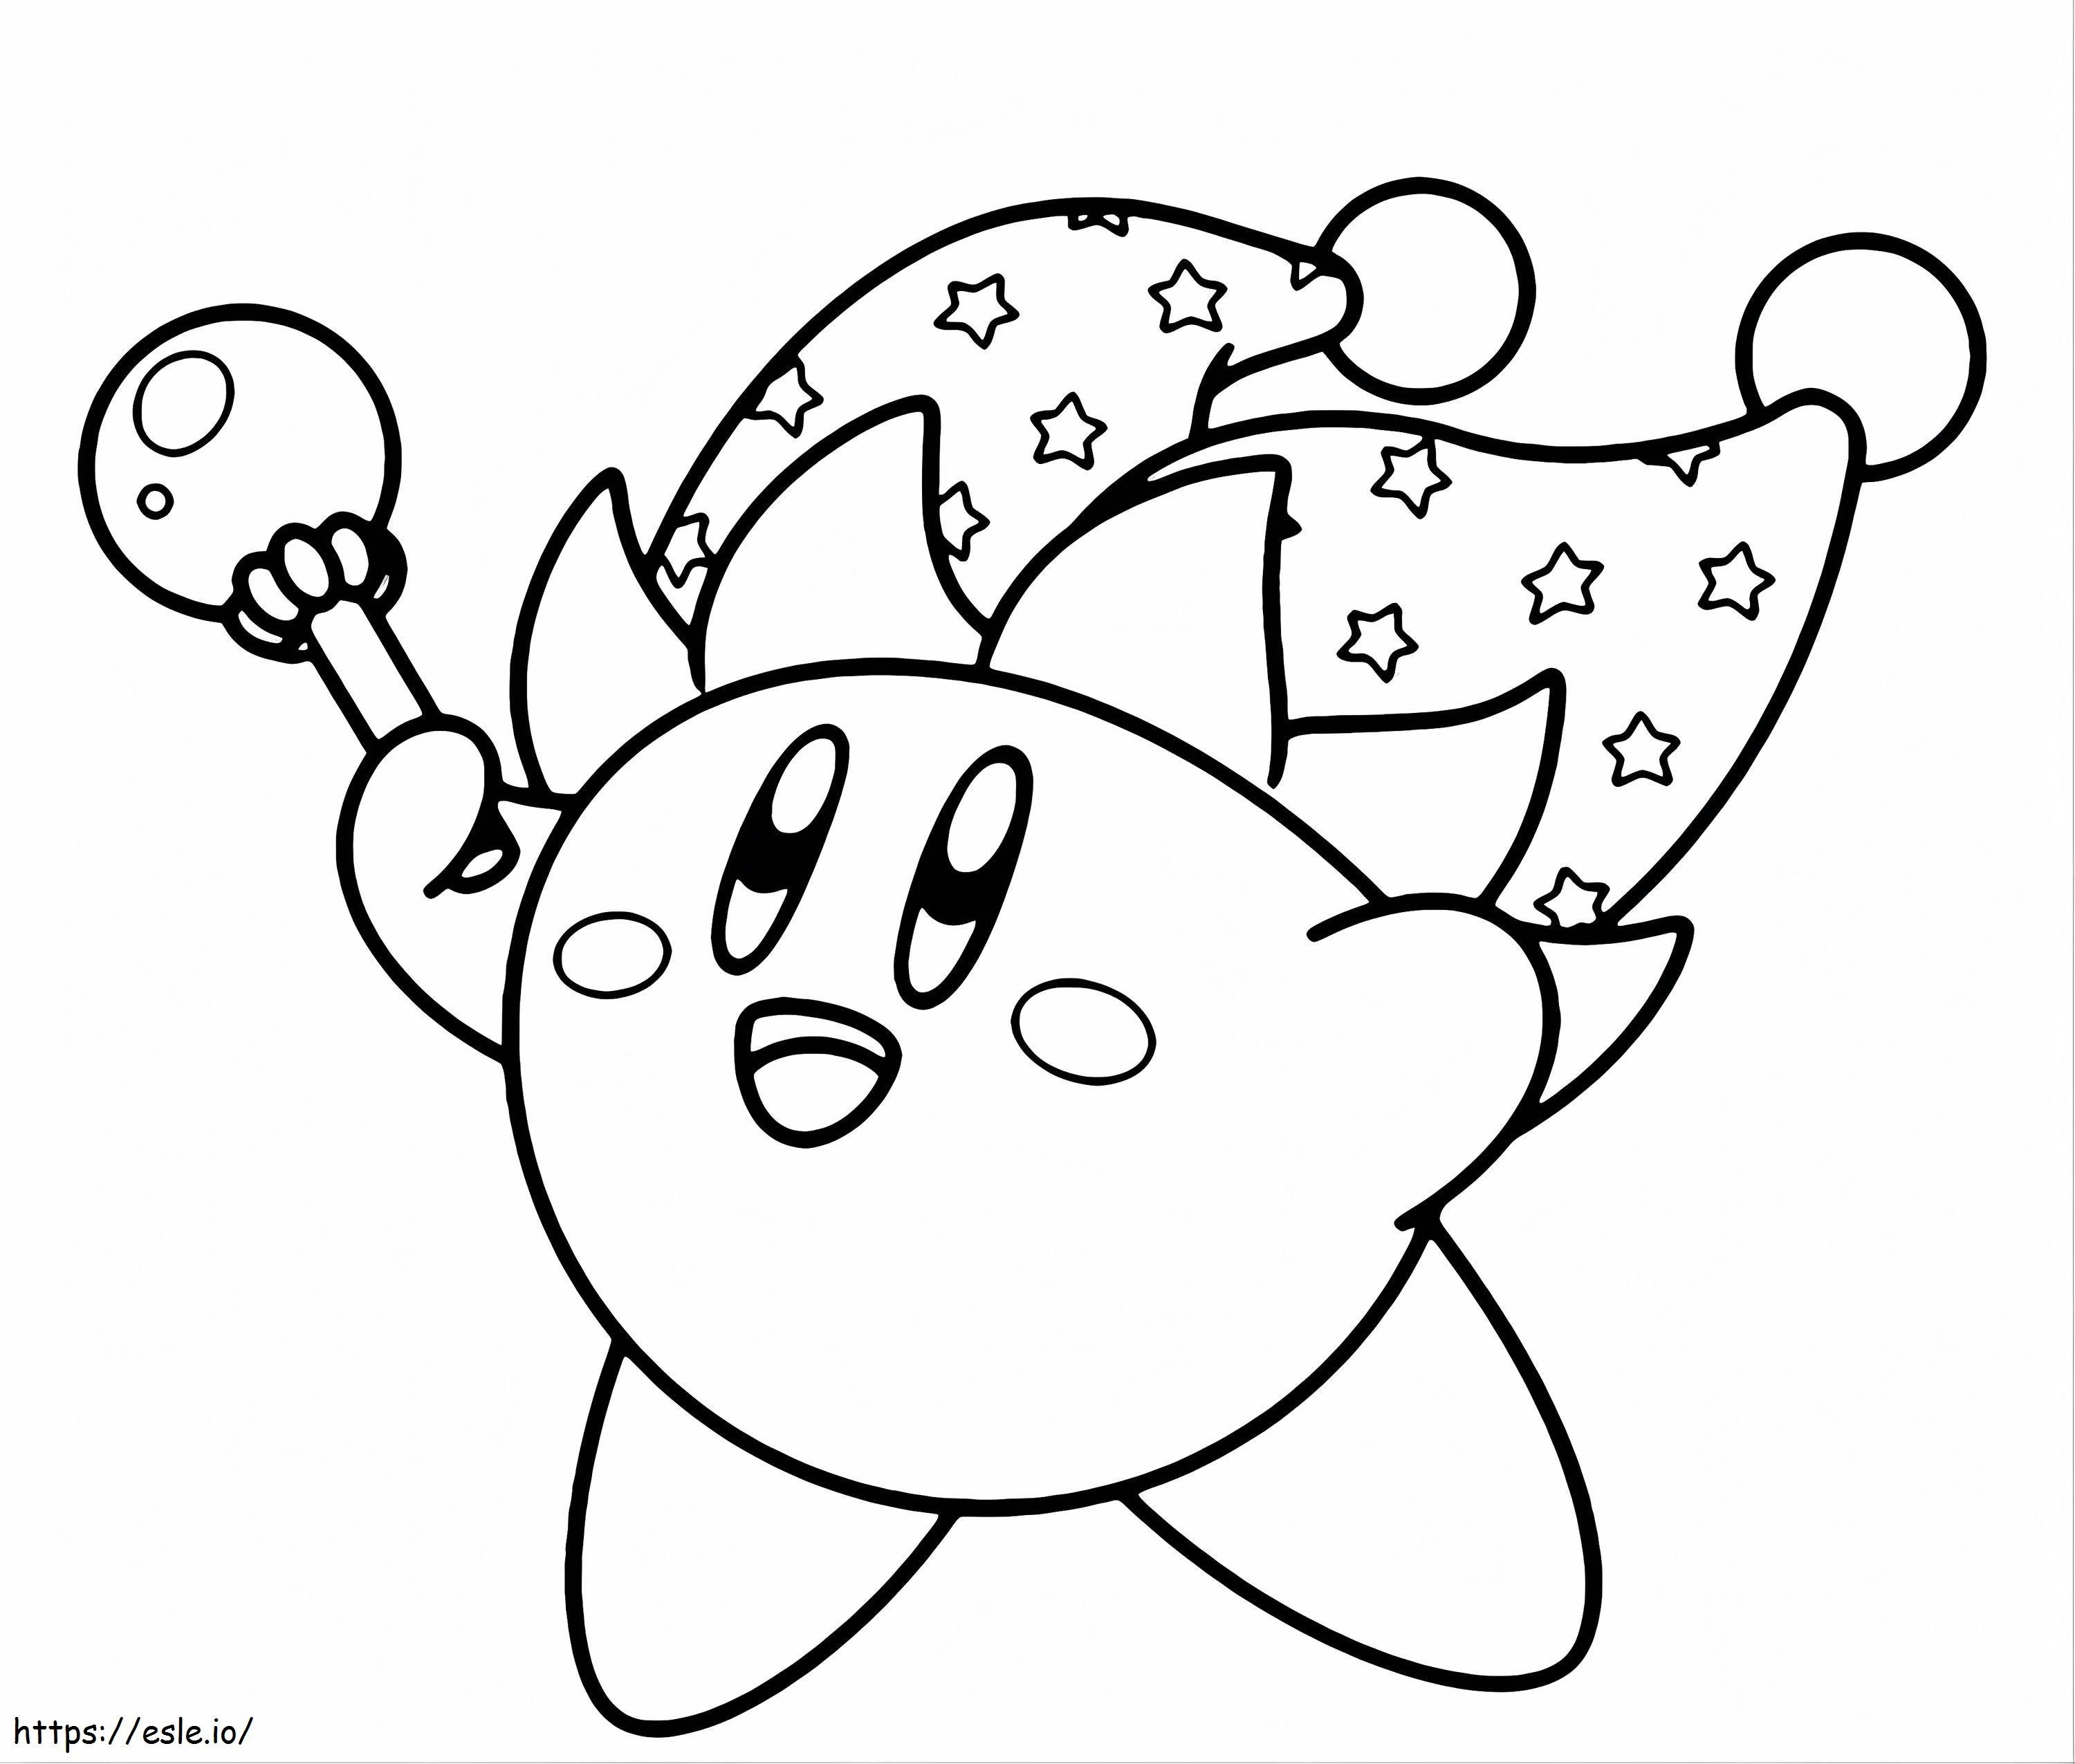 1528855953 Idee impresionantă Kirbya4 de colorat